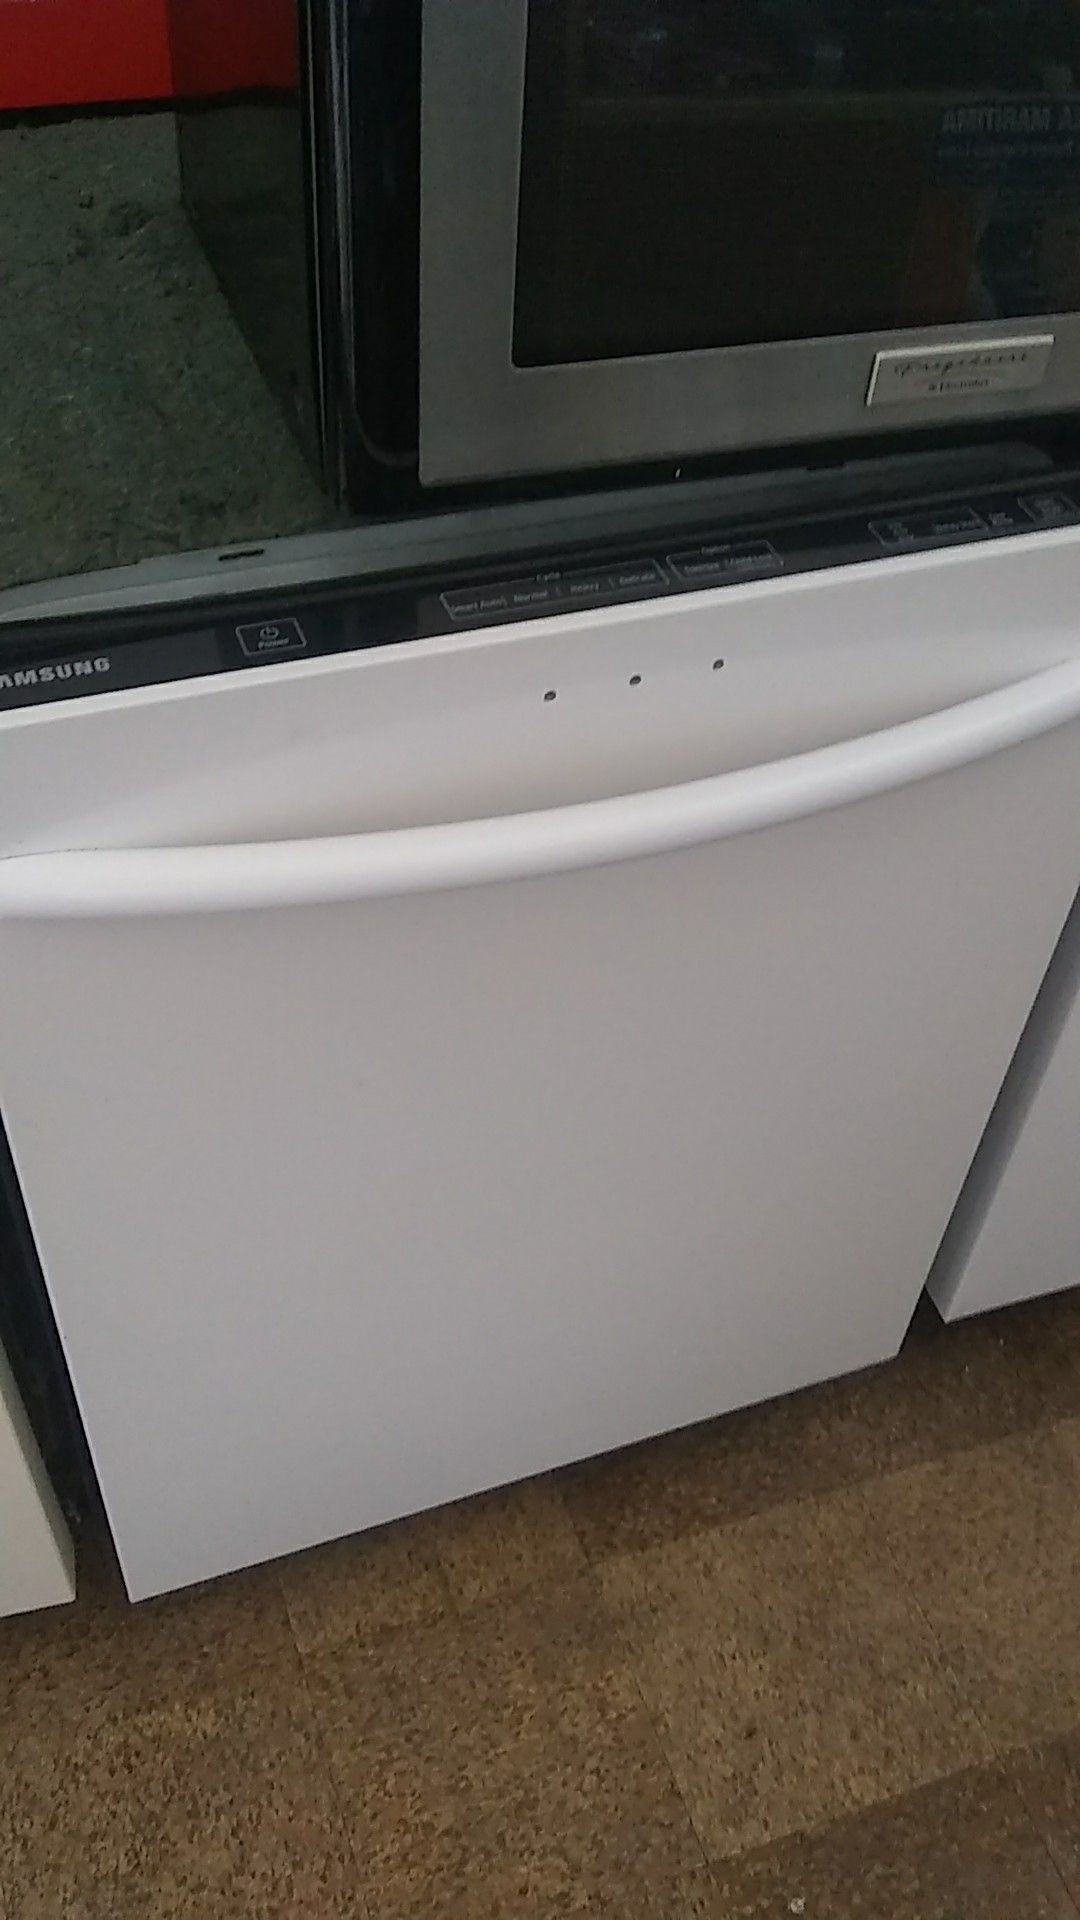 Samsung dishwasher excellent condition